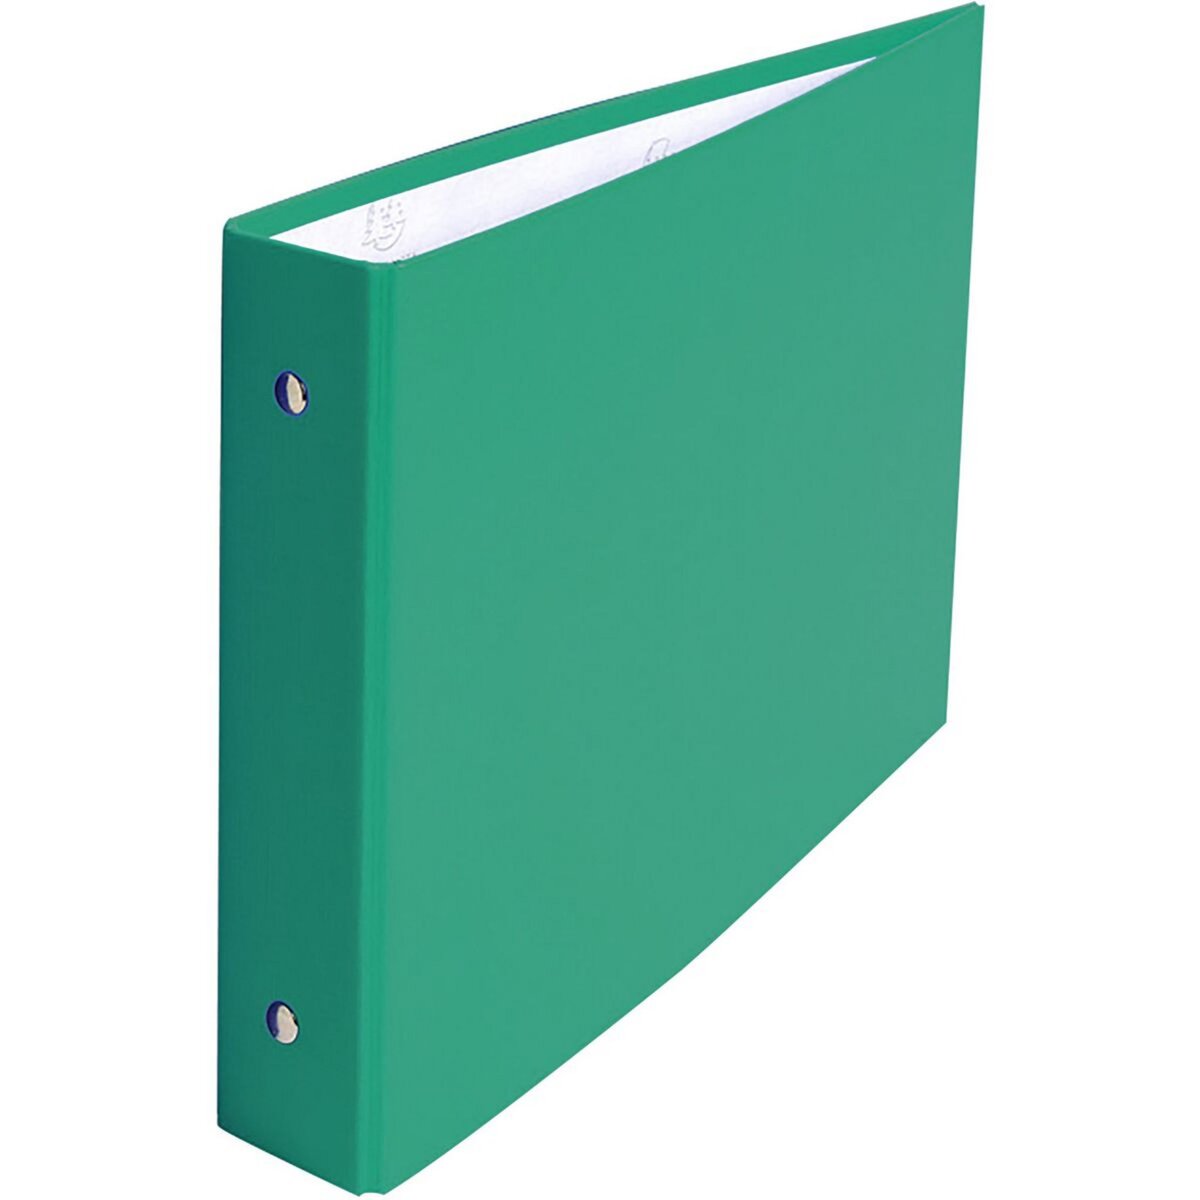 EXACOMPTA Classeur pour fiches 10x15cm rigide vert